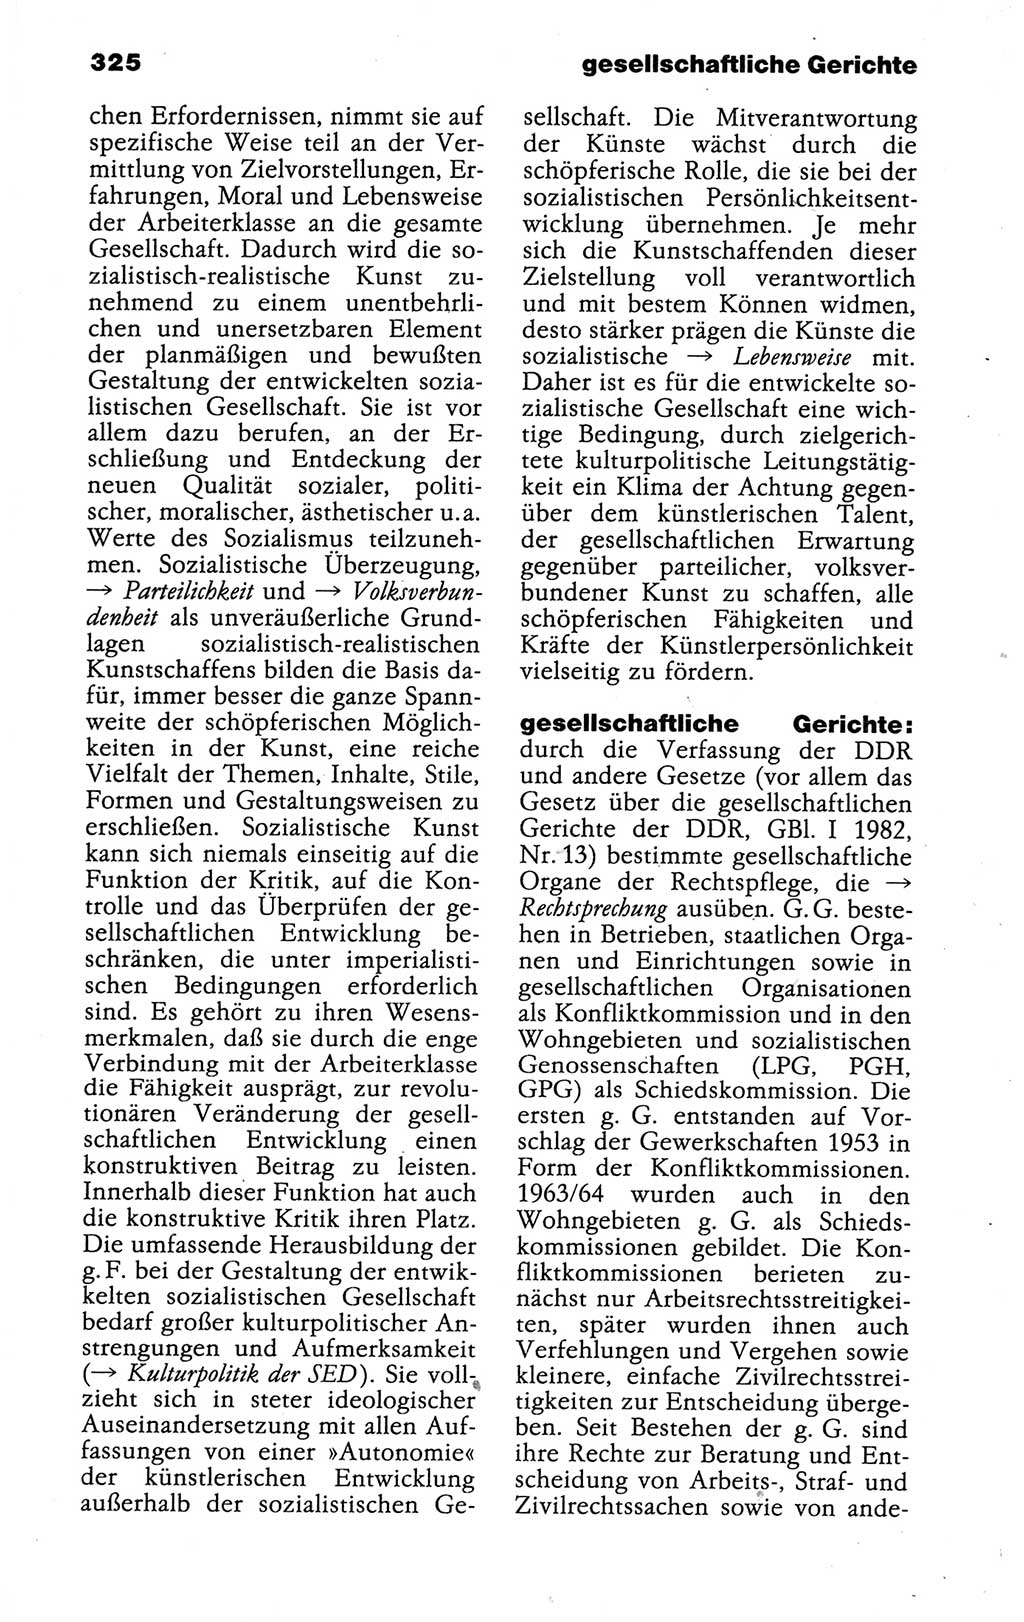 Kleines politisches Wörterbuch [Deutsche Demokratische Republik (DDR)] 1988, Seite 325 (Kl. pol. Wb. DDR 1988, S. 325)